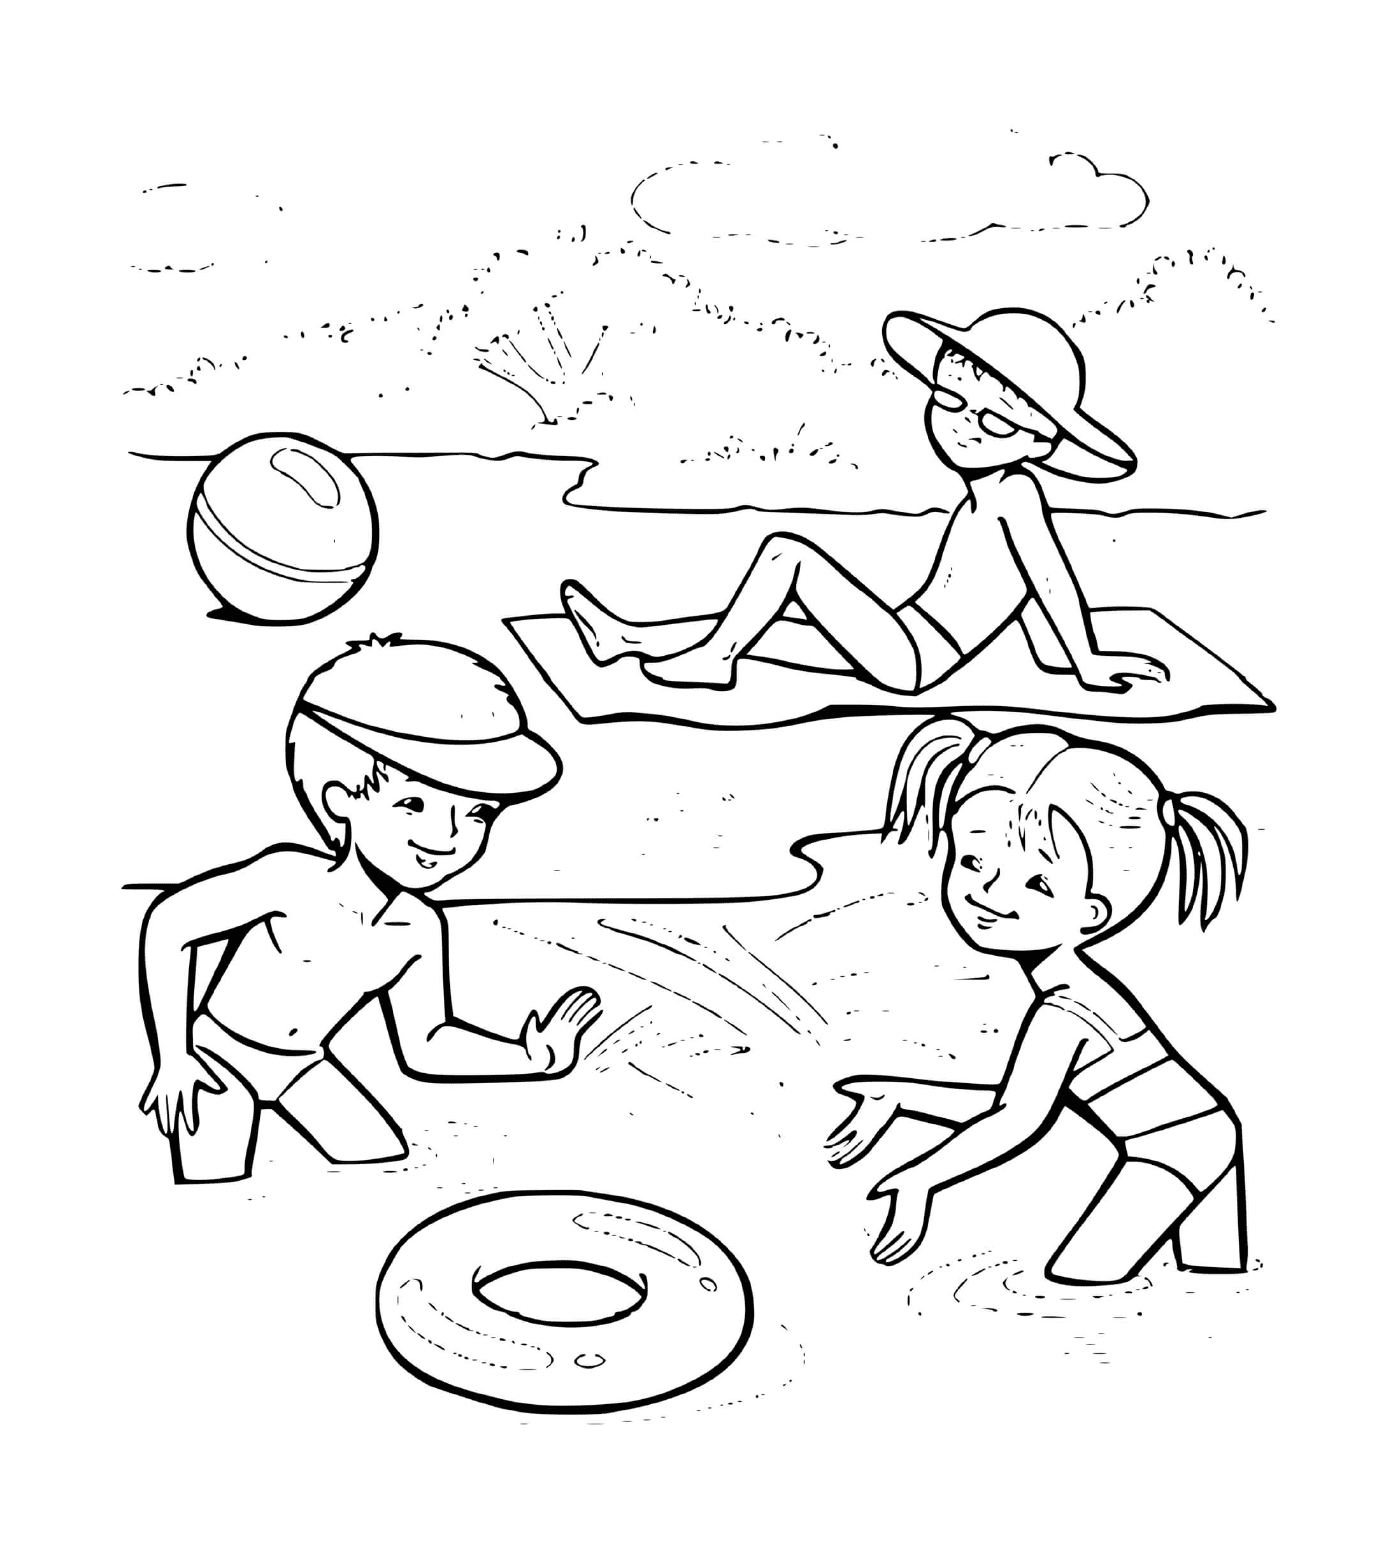  Crianças brincando na praia 